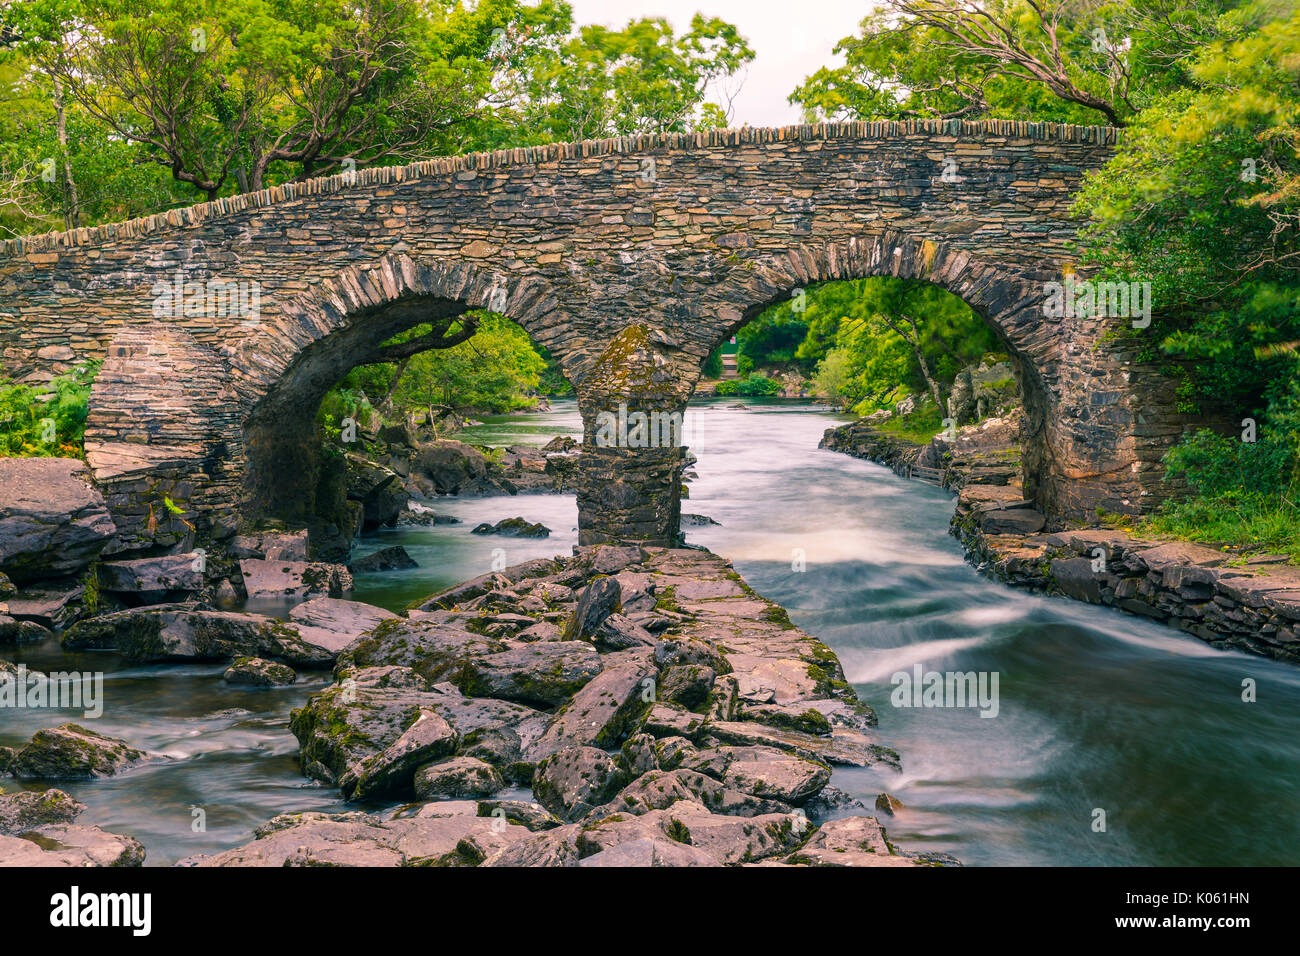 Die alte Weir Bridge ist eine alte Brücke im Nationalpark Killarney im County Kerry, Irland entfernt. Es ist eine Bogenbrücke aus Stein. Die Brid Stockfoto